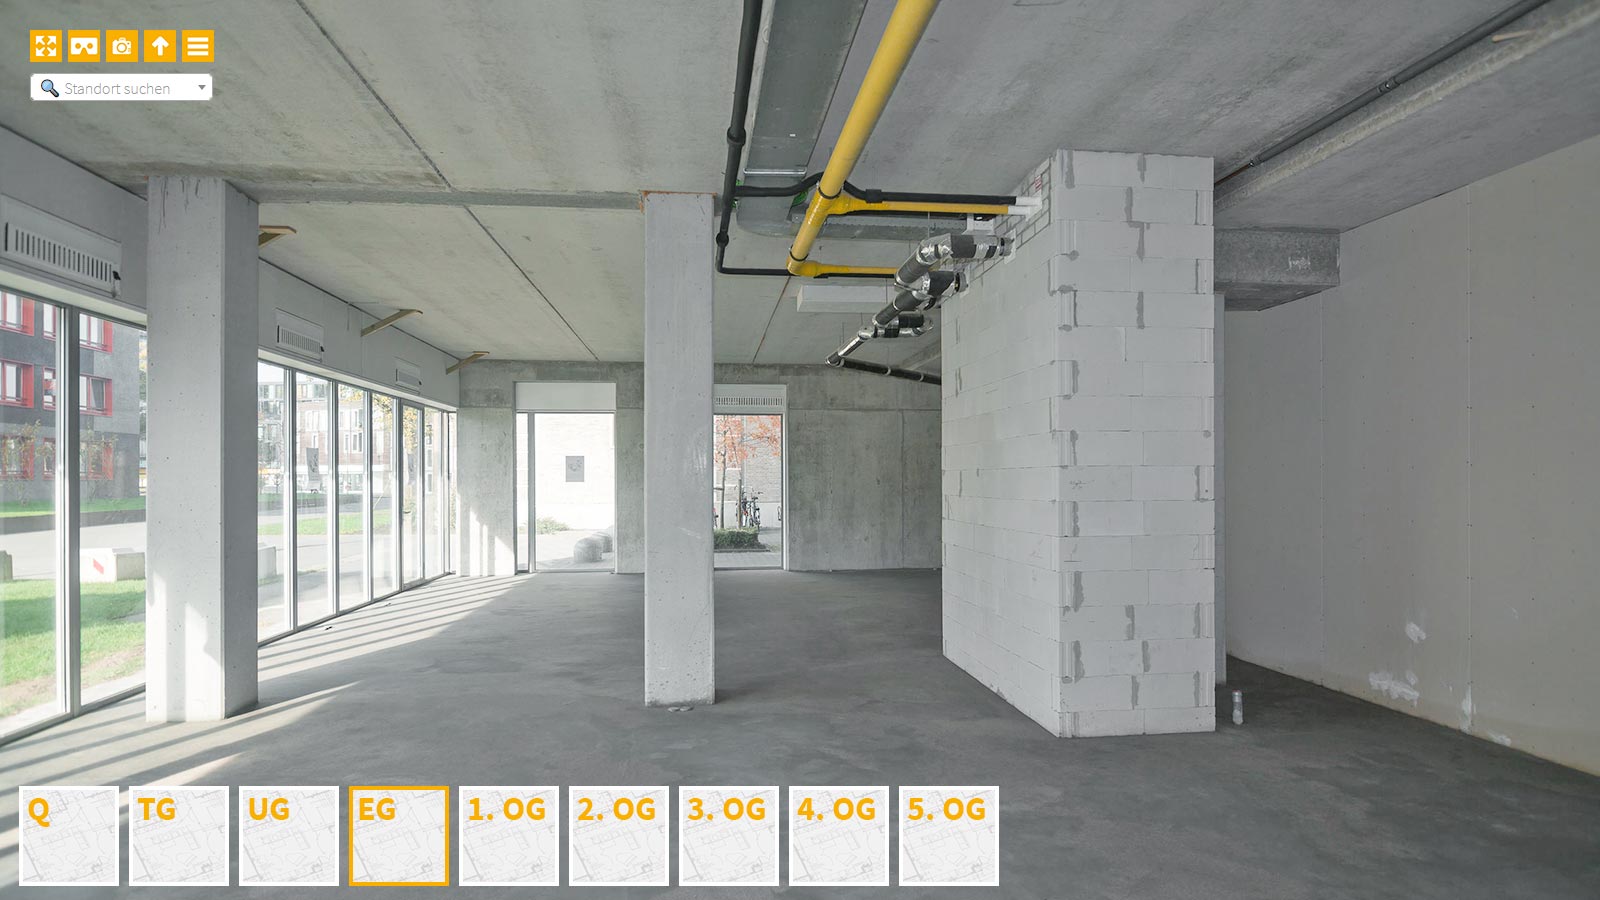 Baudokumentation 360 Grad bei gestörten Projekten in 


	


	


	


	


	


	


	


	


	


	Ulm









, Bilddokumentation als virtueller Rundgang